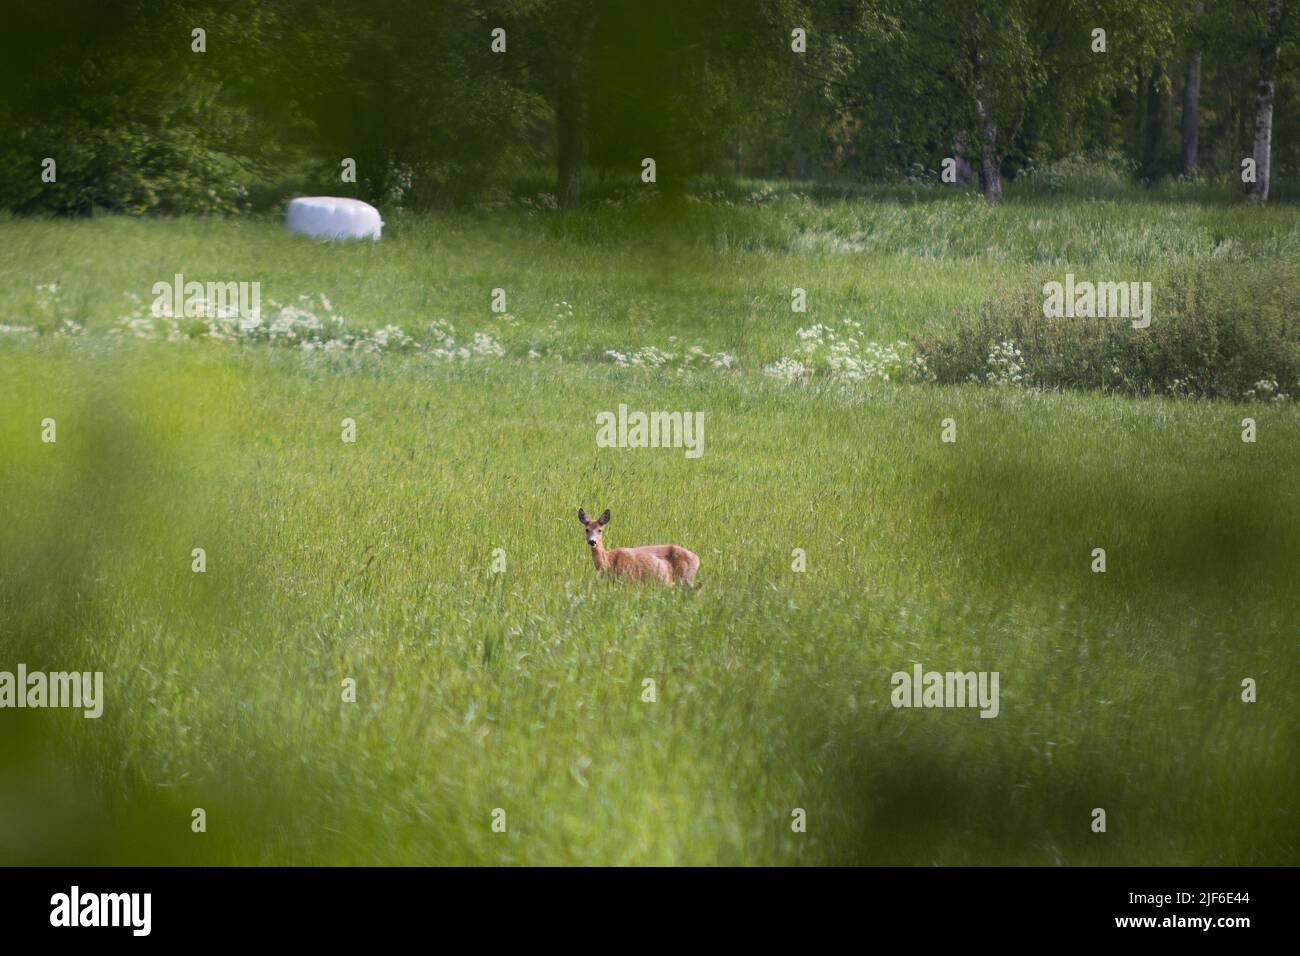 Une vue panoramique d'un cerf de Virginie debout dans un champ vert, regardant une caméra Banque D'Images